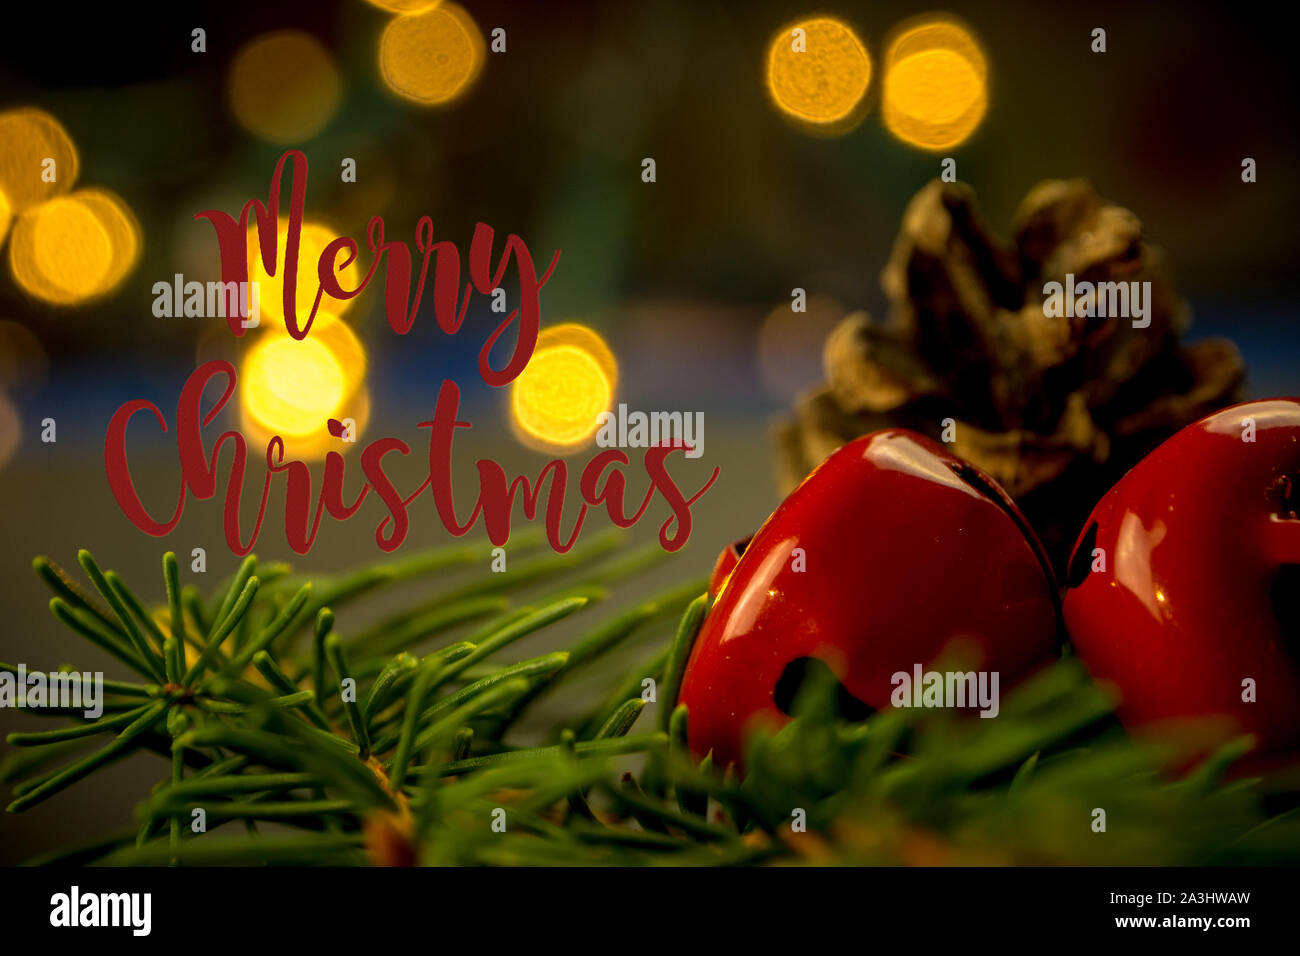 Libre de décorations de Noël, Jingle bells avec lumières floues de couleur orange et le soir, ambiance chaleureuse et au crépuscule historique Banque D'Images